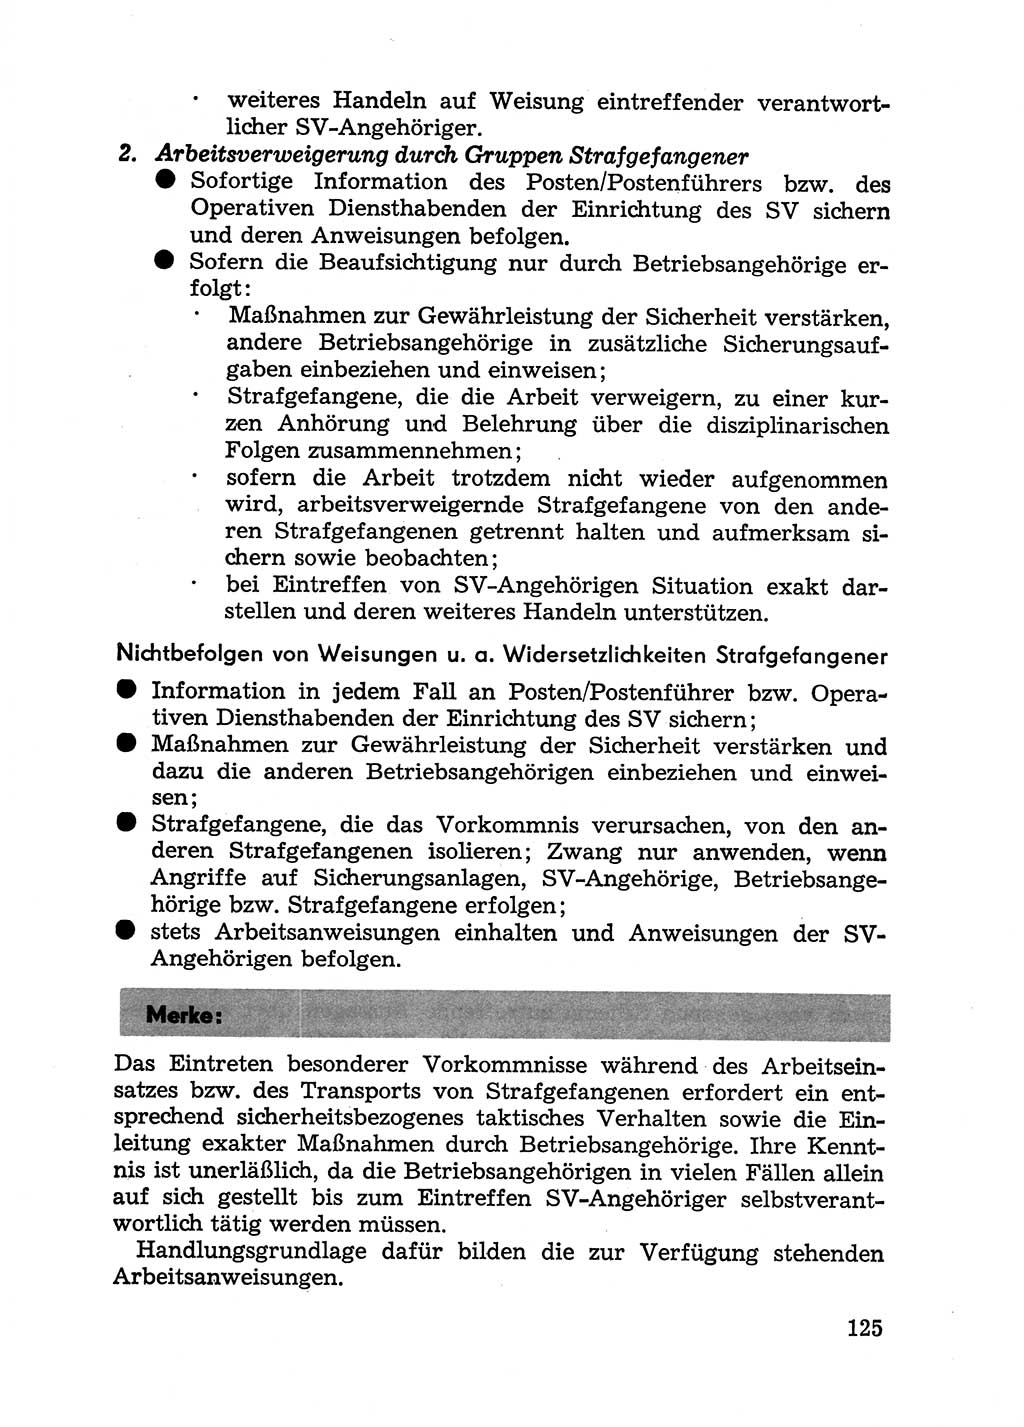 Handbuch für Betriebsangehörige, Abteilung Strafvollzug (SV) [Ministerium des Innern (MdI) Deutsche Demokratische Republik (DDR)] 1981, Seite 125 (Hb. BA Abt. SV MdI DDR 1981, S. 125)